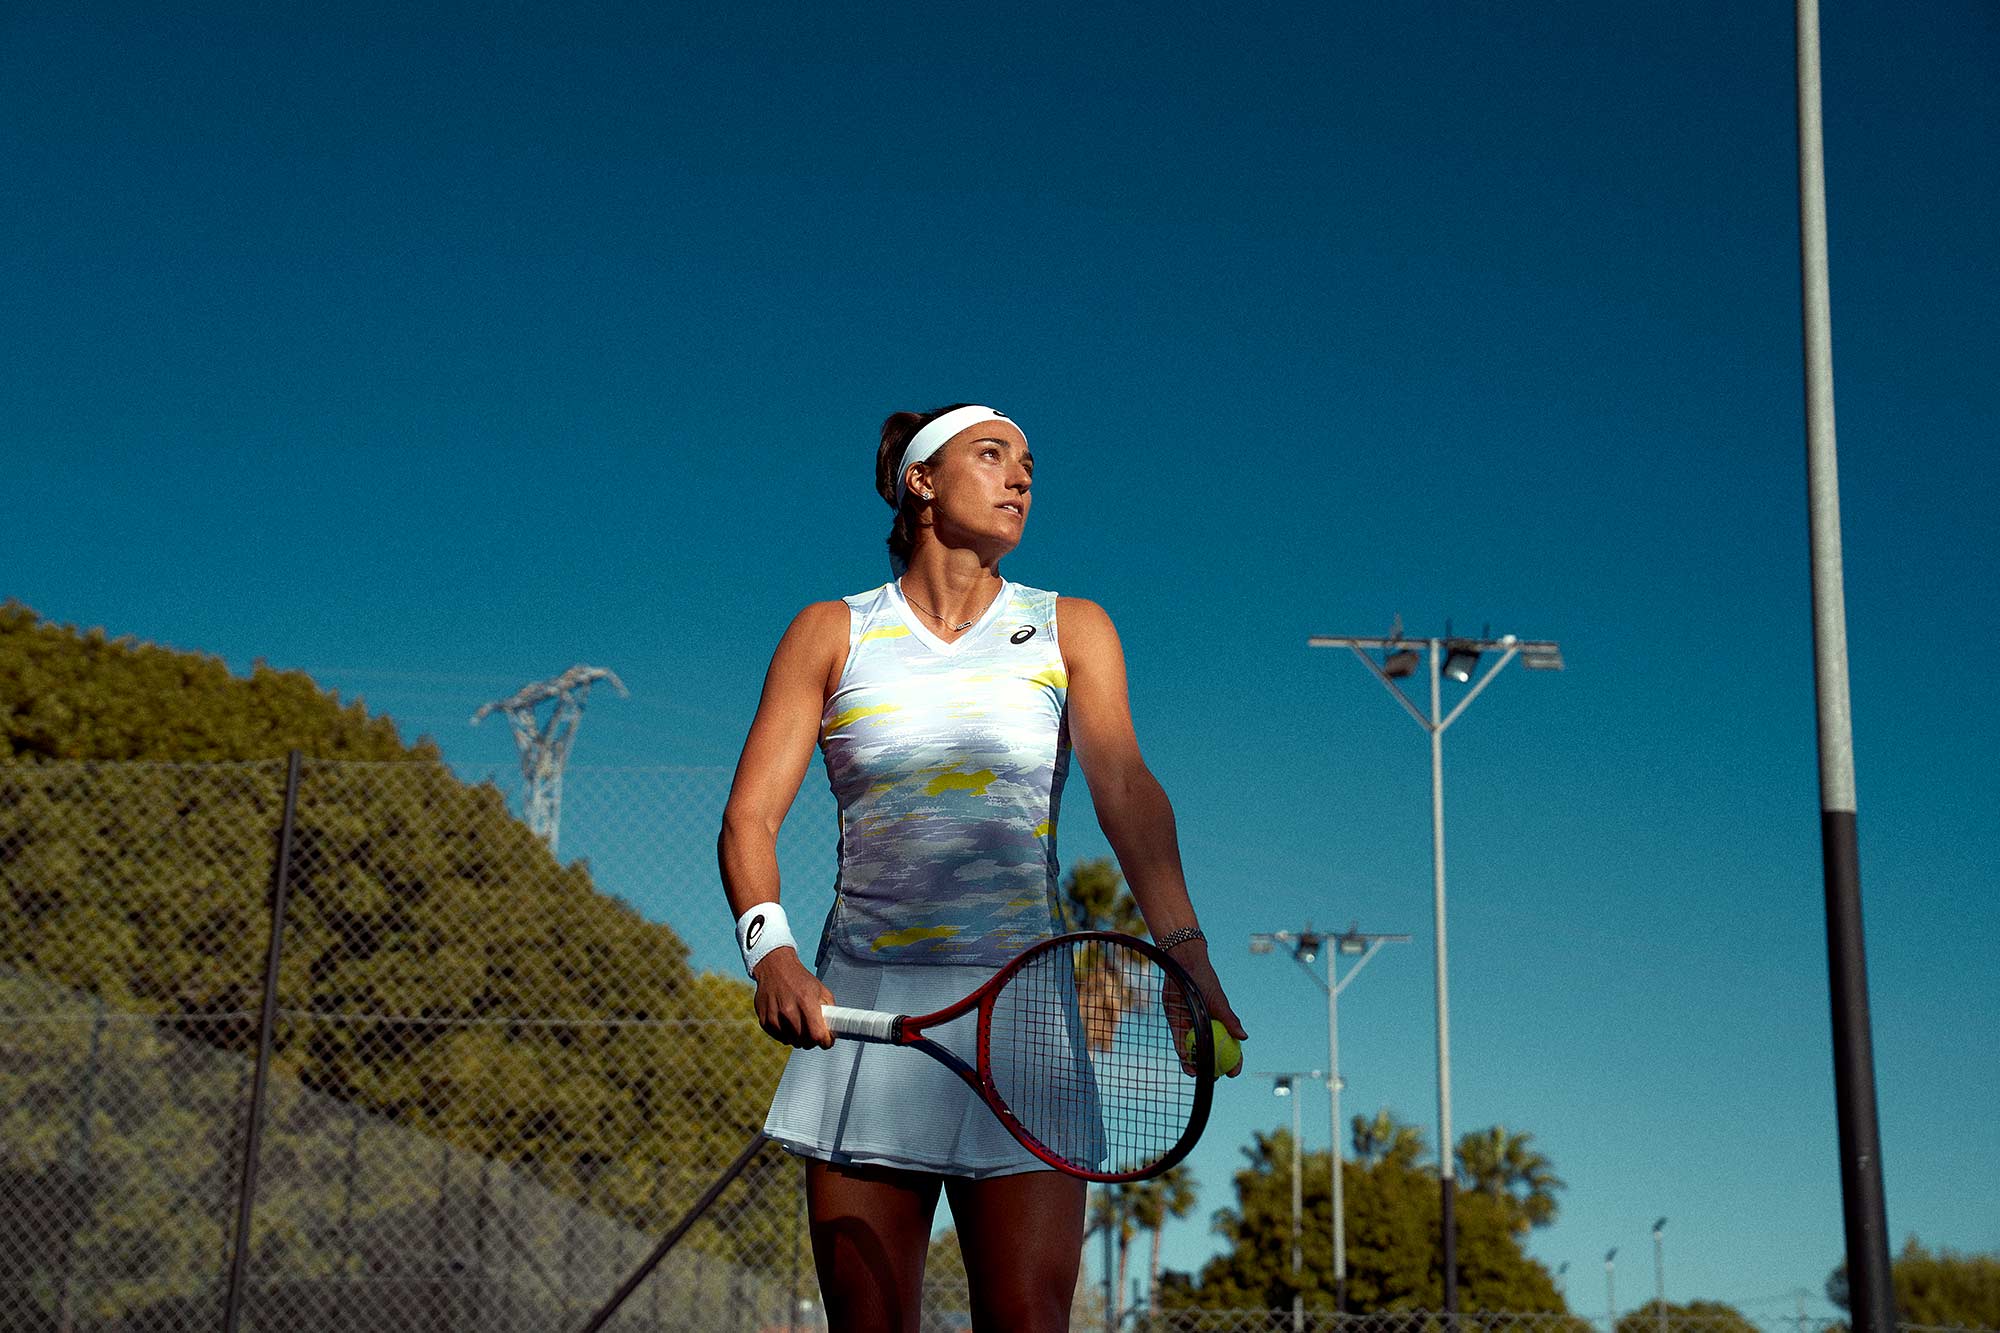 crisp blue sky sets the backdrop as tennis star caroline garcia sets up a serve on hard court